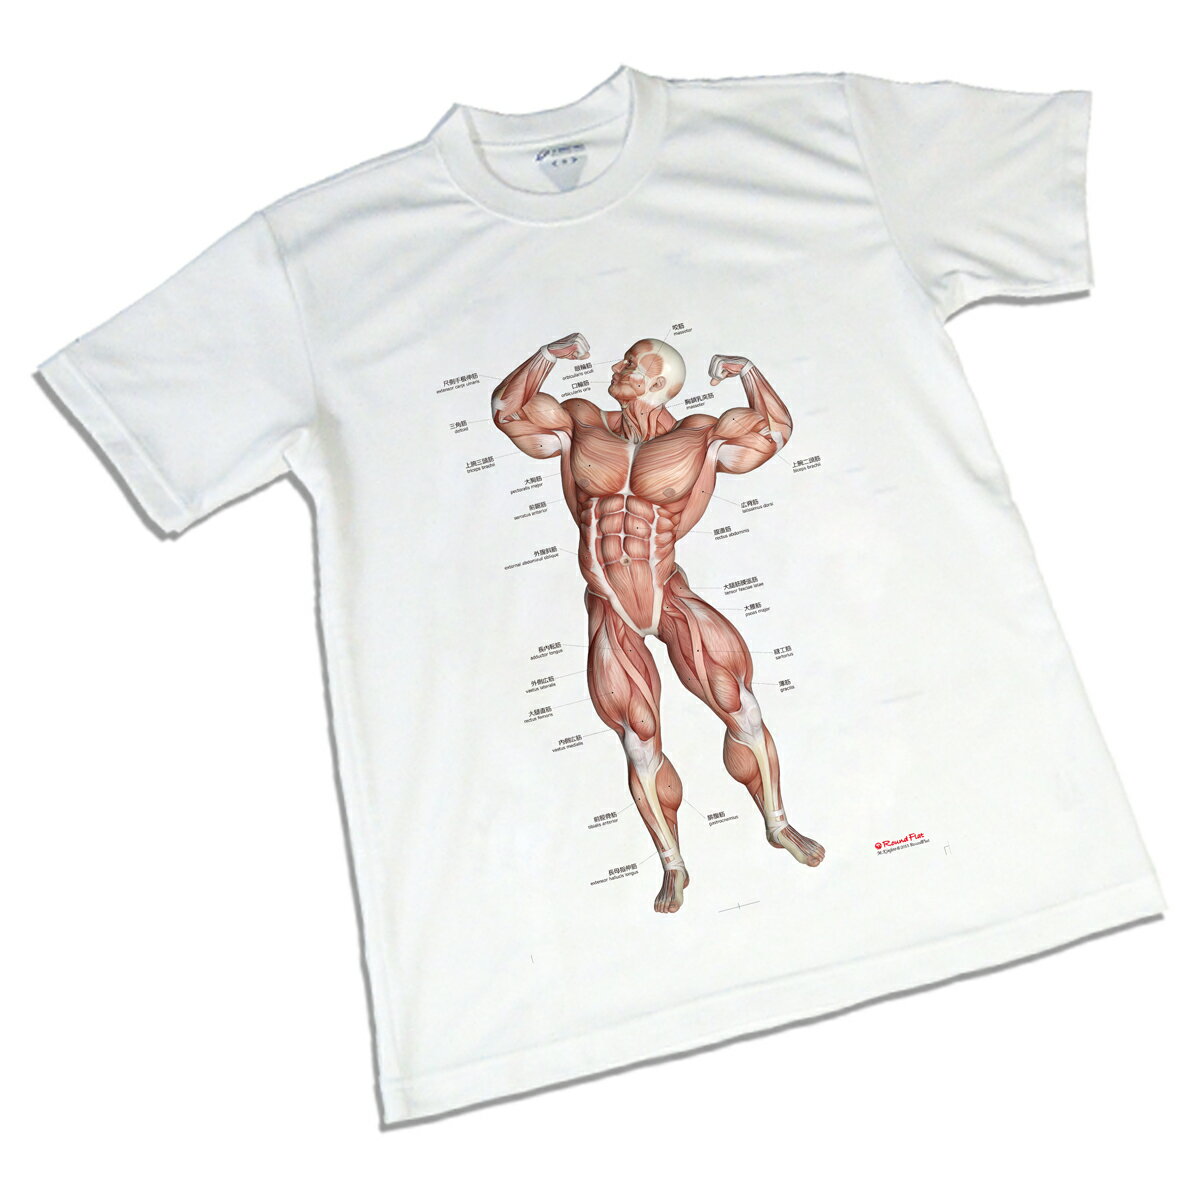 筋肉柄 Tシャツ 半袖 「筋次郎デザイン」 スポーツ 運動 トレーニング 両面プリント フルカラー 着心地 抜群 解剖 送料無料 キャンペーン